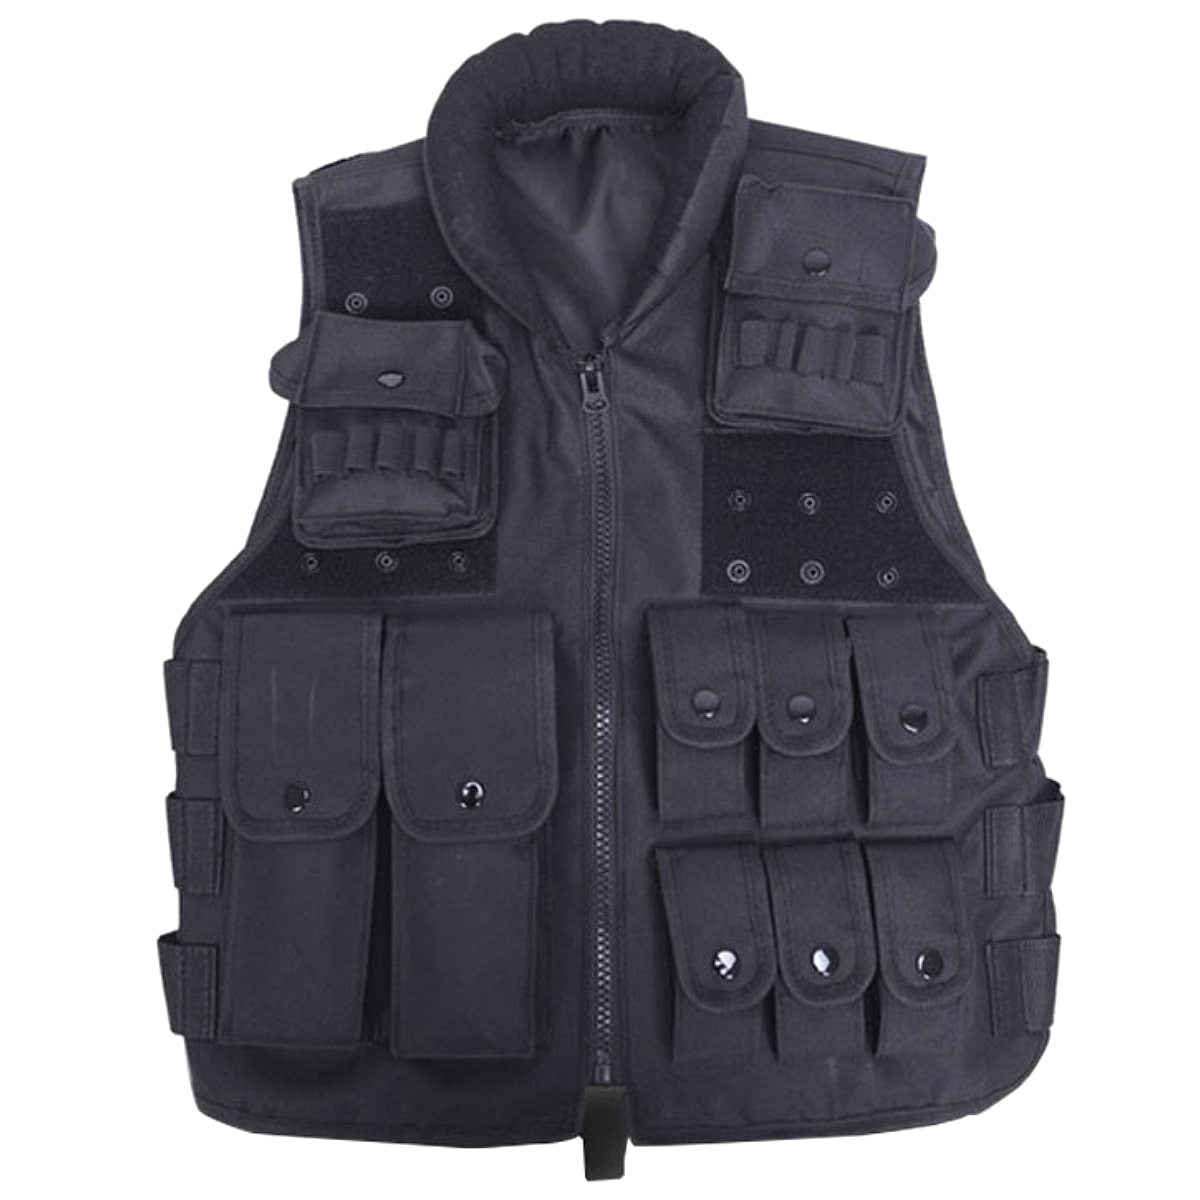 フリーサイズ ワッペン2枚の特典付き! [Men s Protective Magazine Pouch Black Tactical Vest] メンズ プロテクティブマガジンポーチ ブラックタクティカルベスト! ミリタリーベスト SWAT カ…